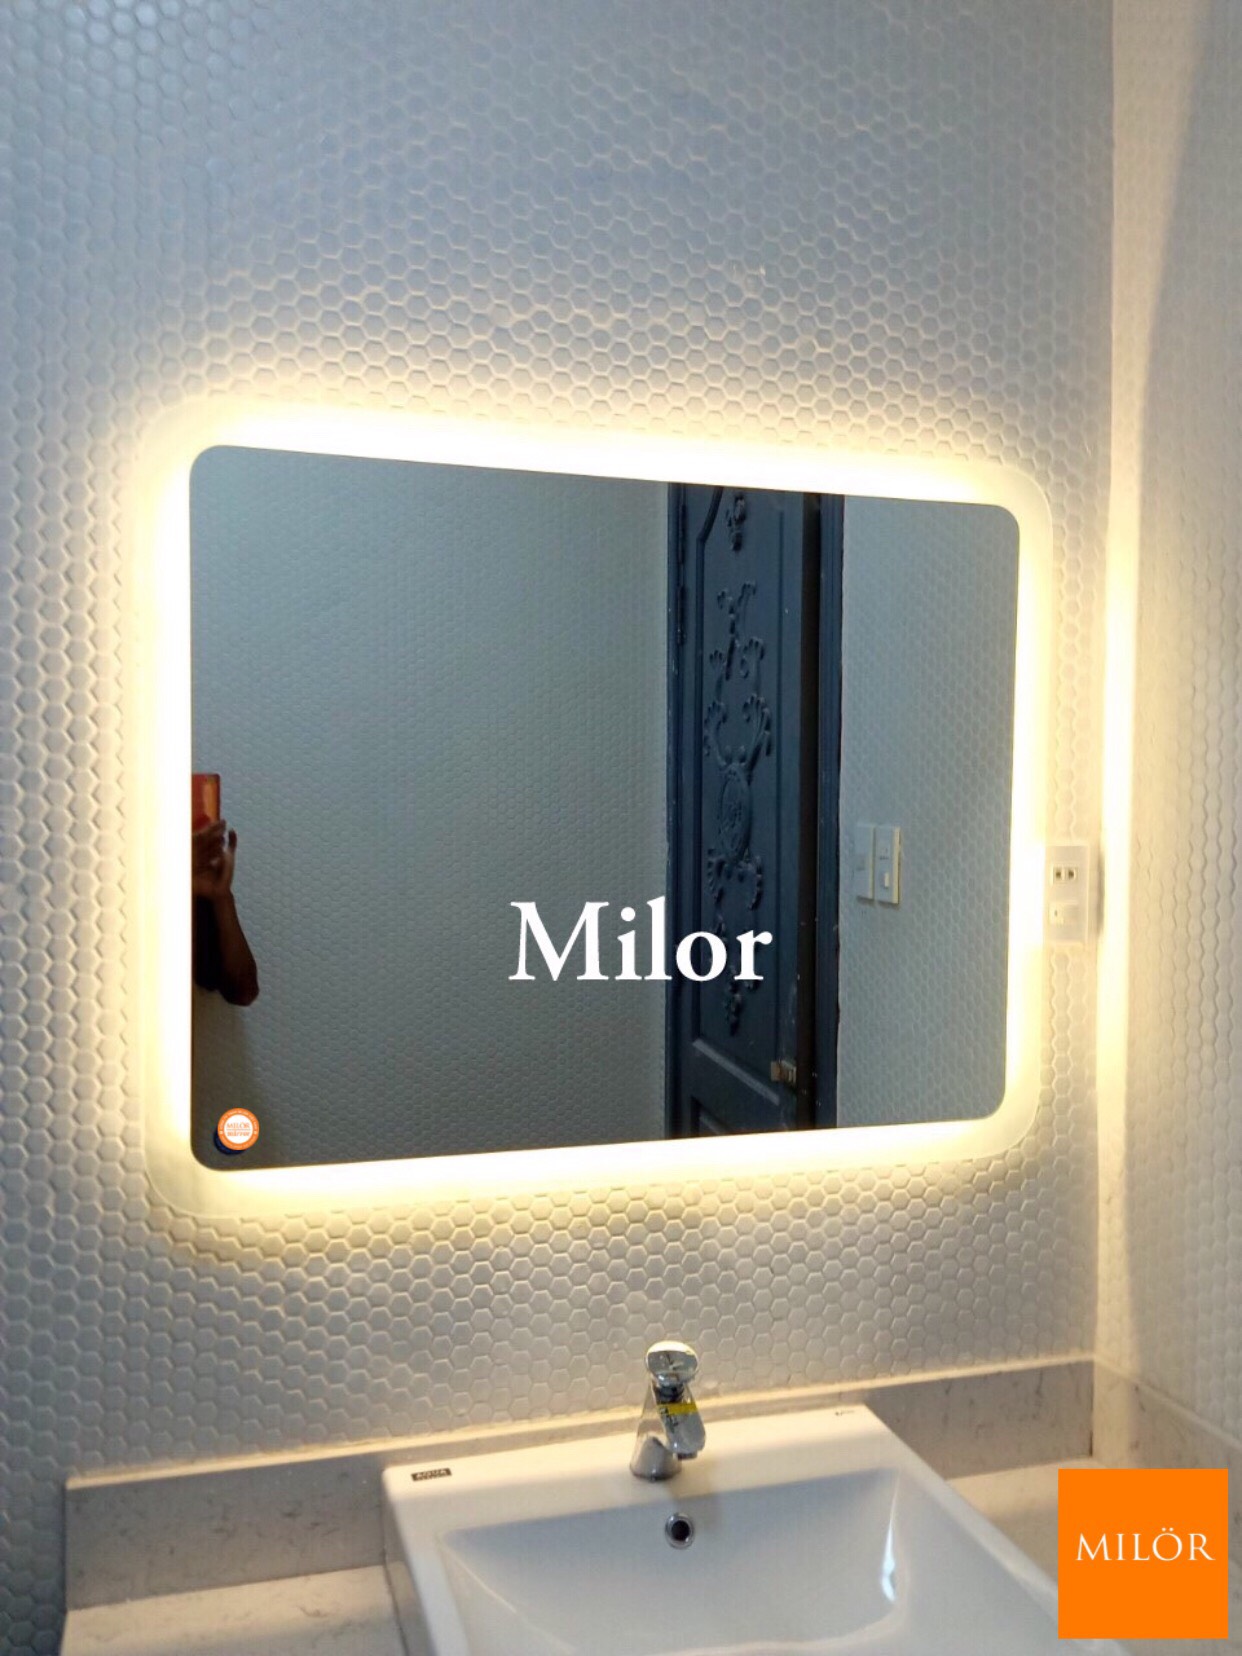 Gương nhà tắm đèn led chữ nhật Milor sẽ là lựa chọn hoàn hảo cho mọi gia đình hiện đại. Với công nghệ led tiên tiến, gương sẽ ánh sáng đầy đủ để giúp bạn thấy được khuôn mặt và tạo ra các bức ảnh hoàn hảo. Hãy đến đây để trải nghiệm nó cho riêng mình.